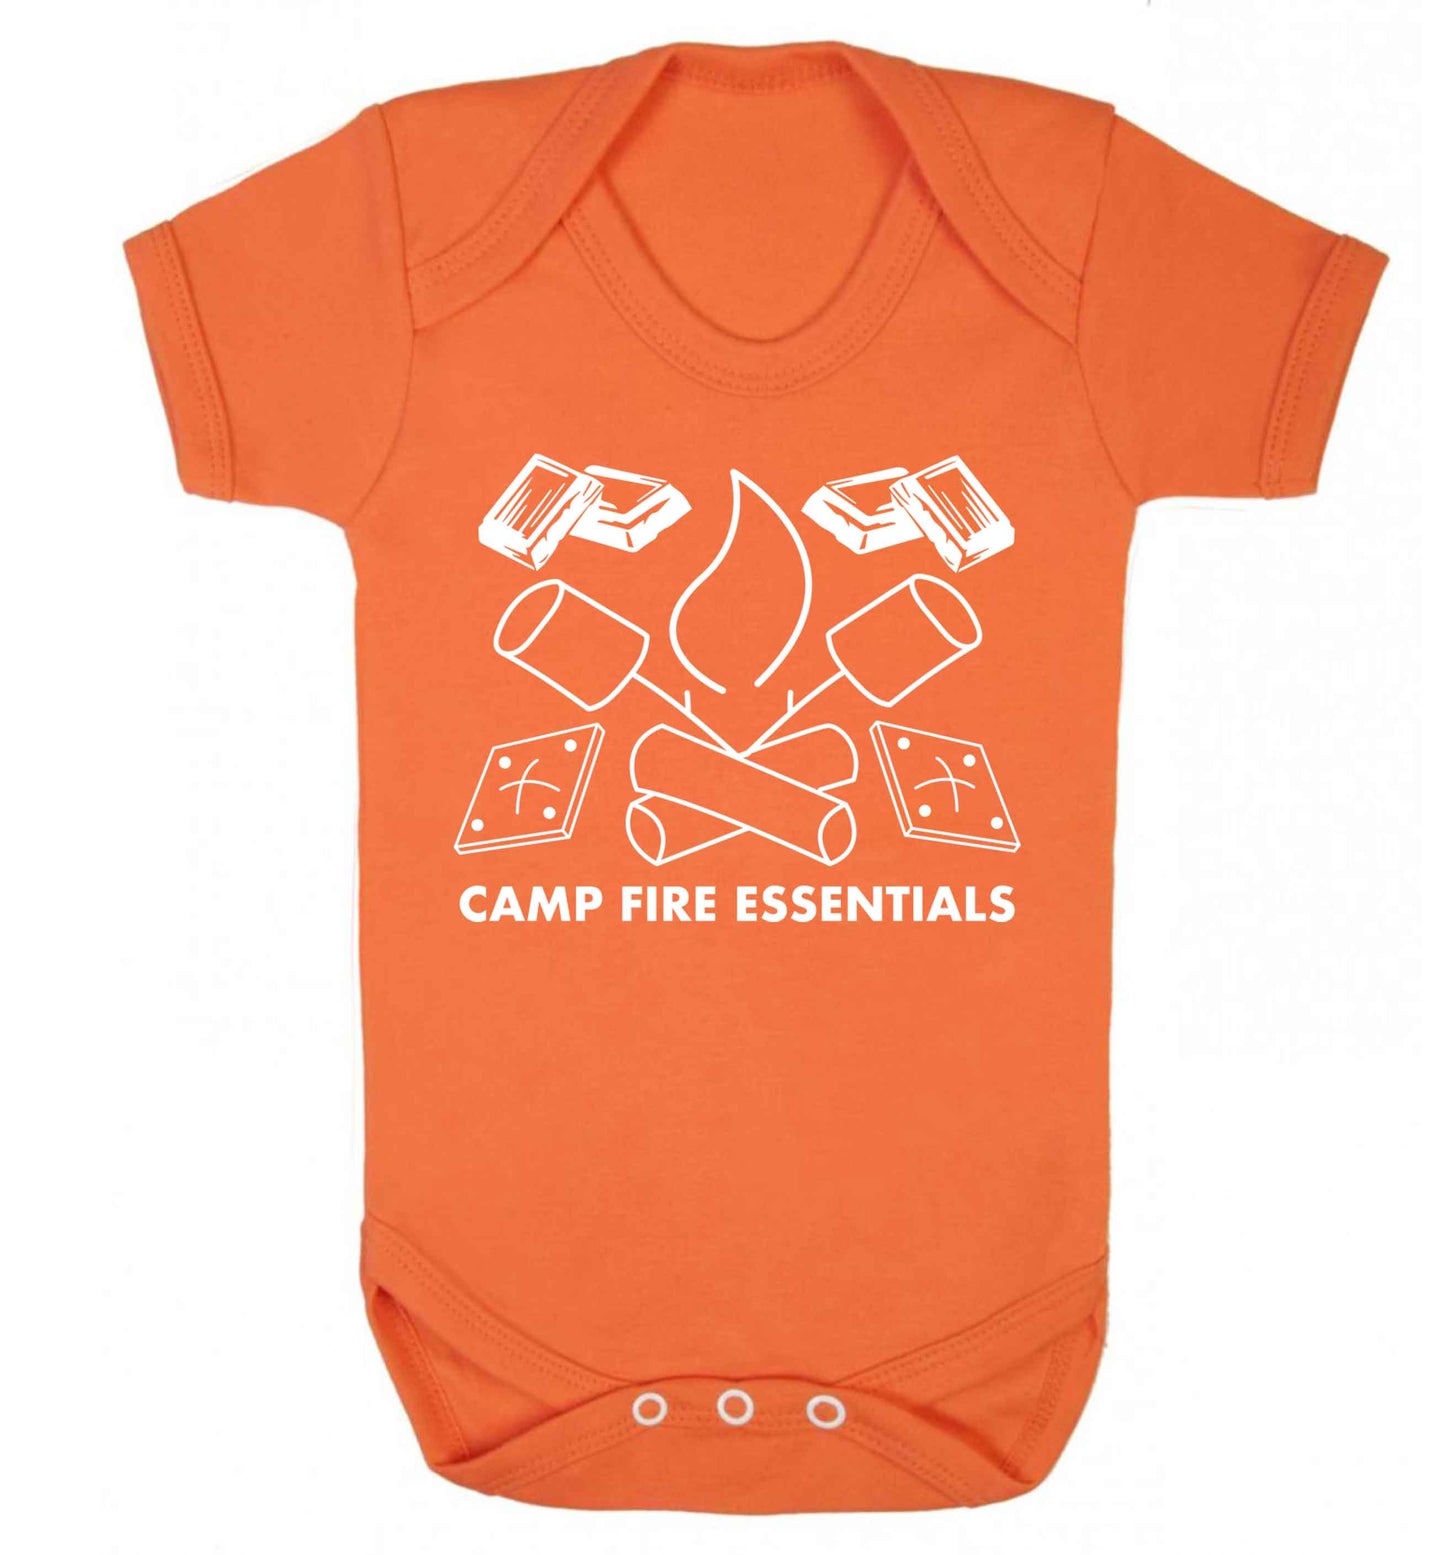 Campfire essentials Baby Vest orange 18-24 months